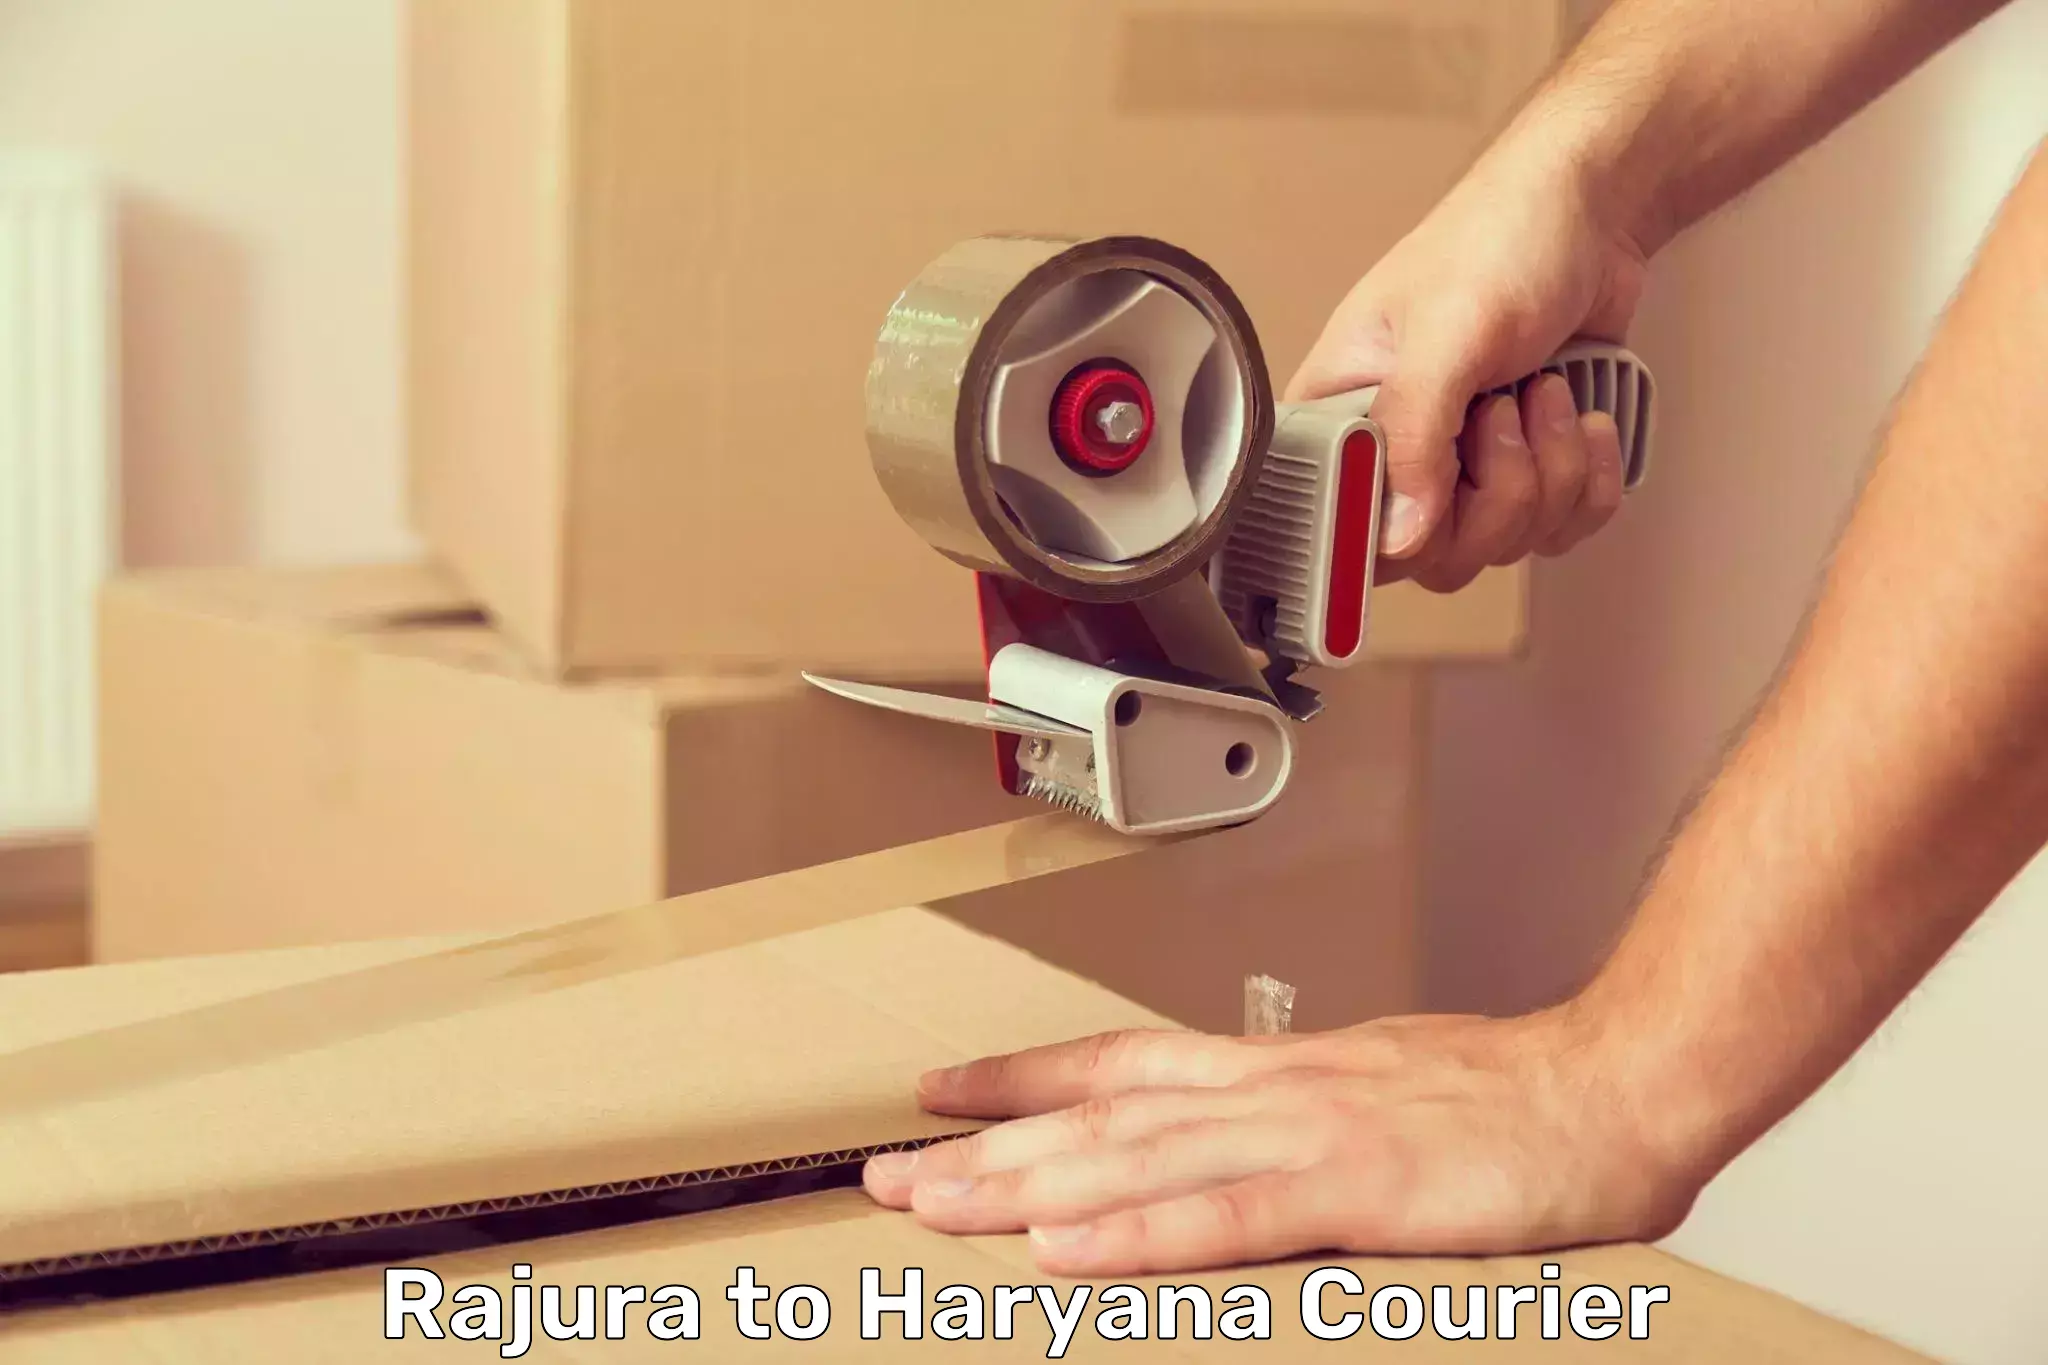 24/7 courier service Rajura to Pataudi